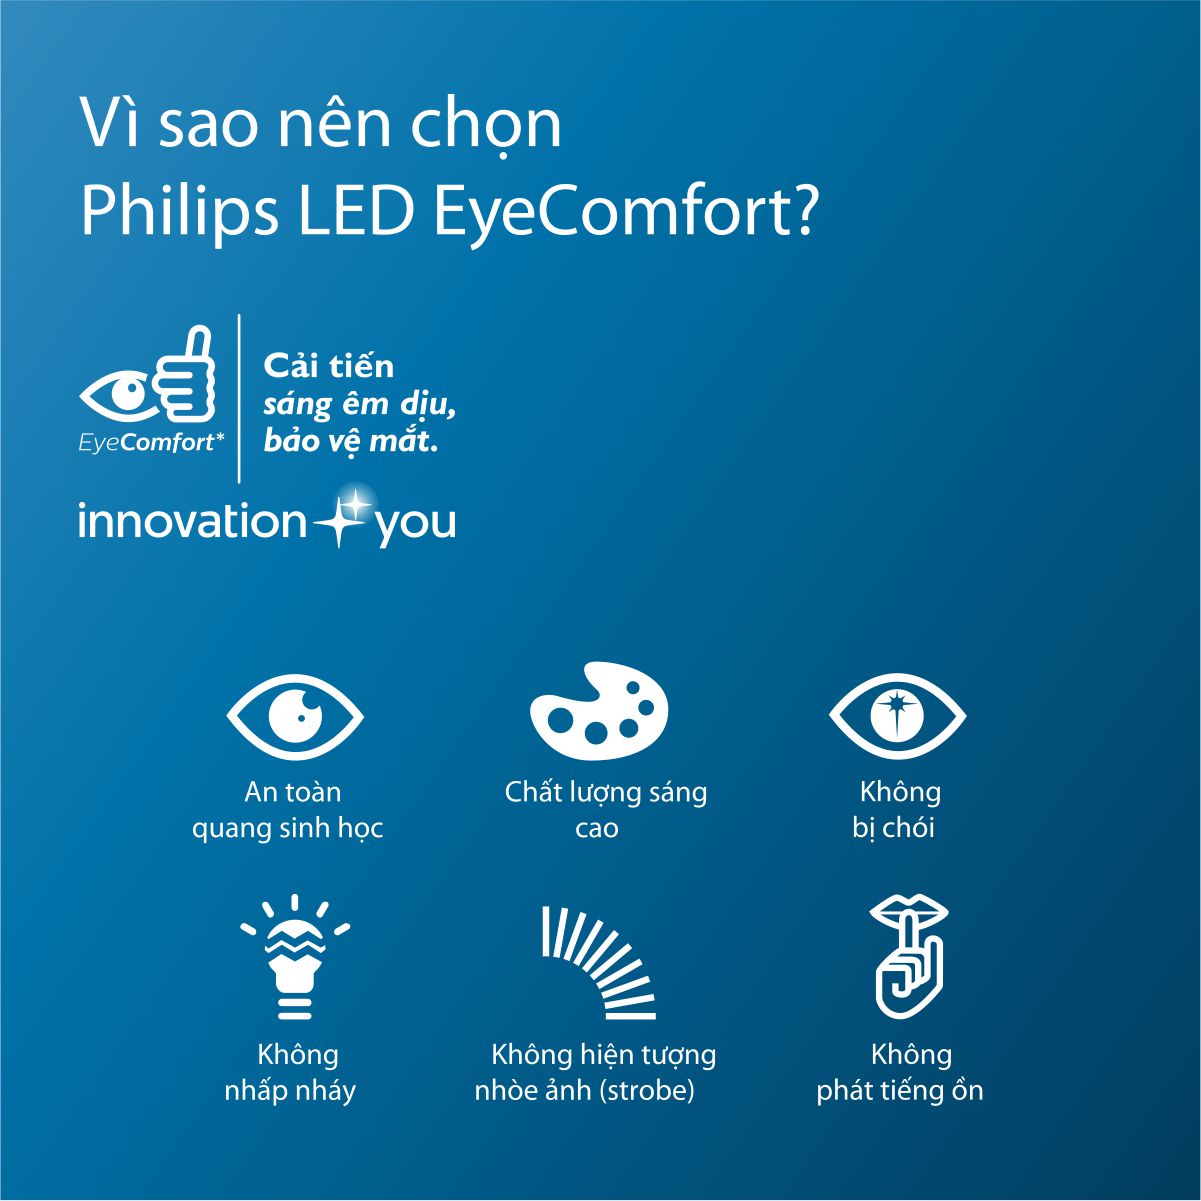 Bóng đèn LED Bright PHILIPS E27 - Thay thế hoàn hảo cho bóng đèn Compact - Hàng Chính Hãng